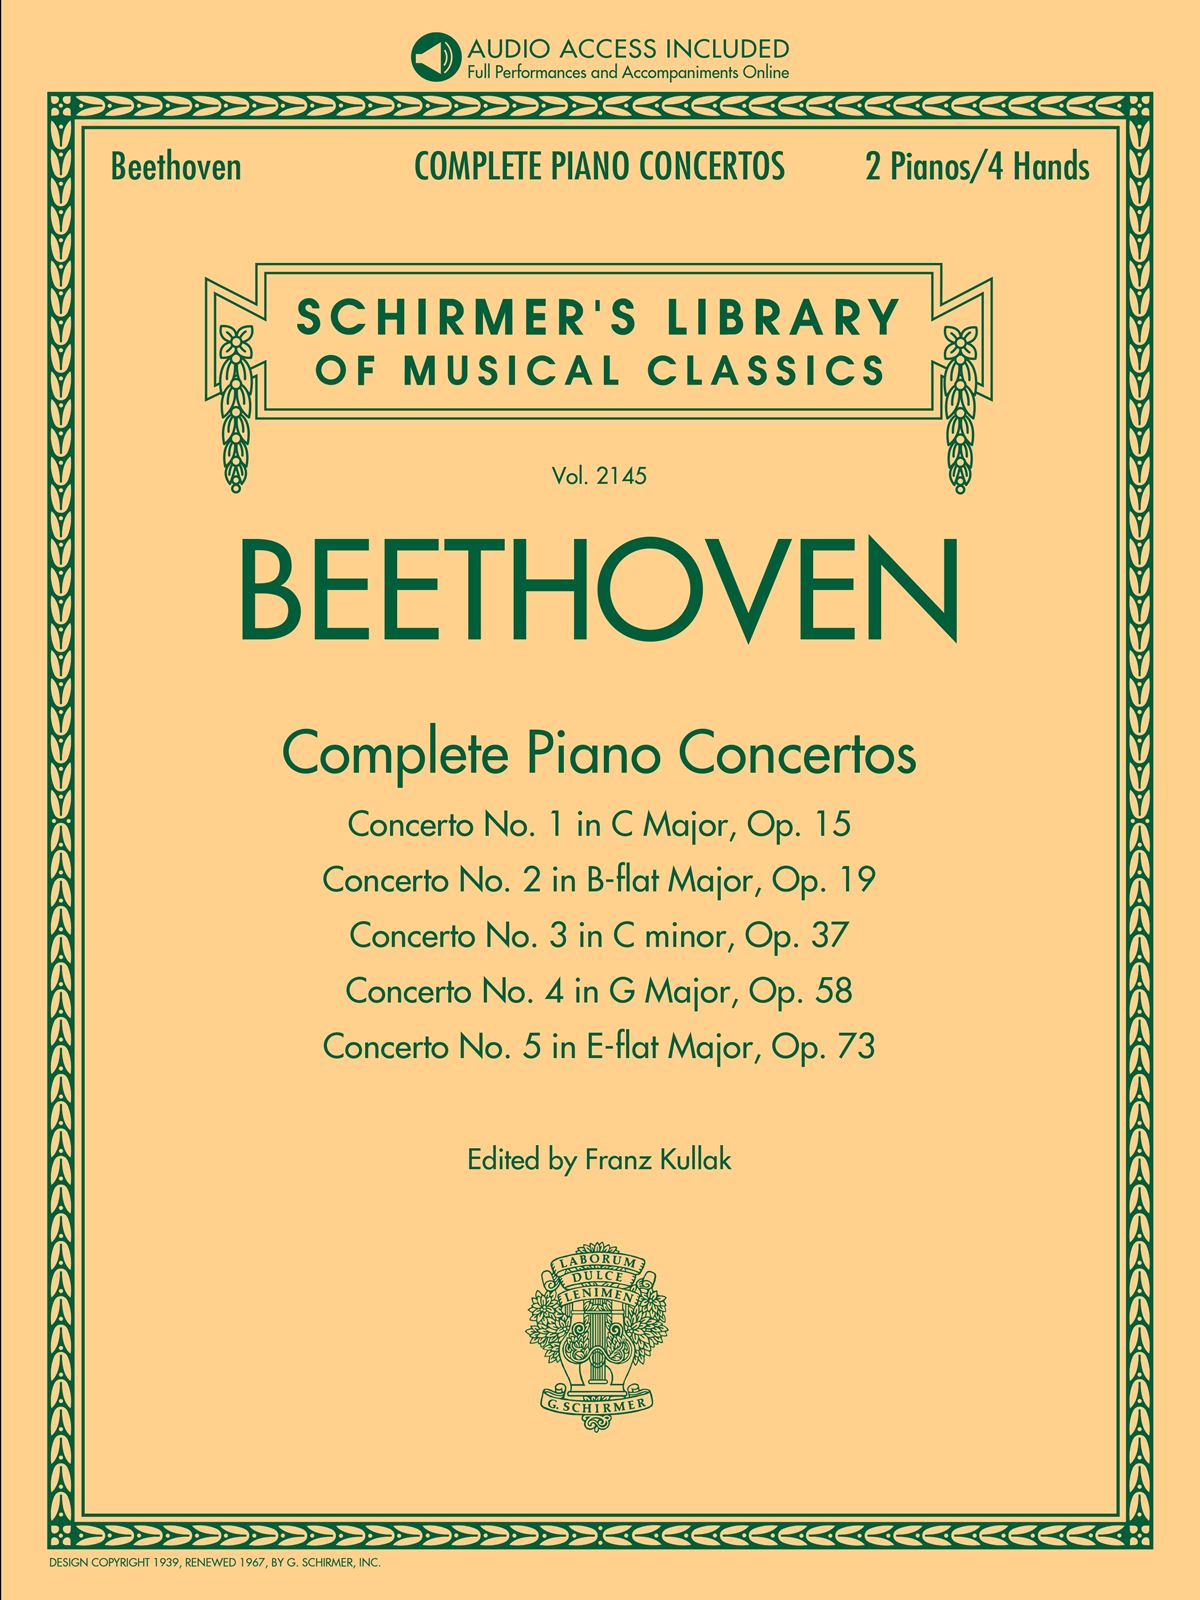 Complete Piano Concertos (BEETHOVEN LUDWIG VAN)